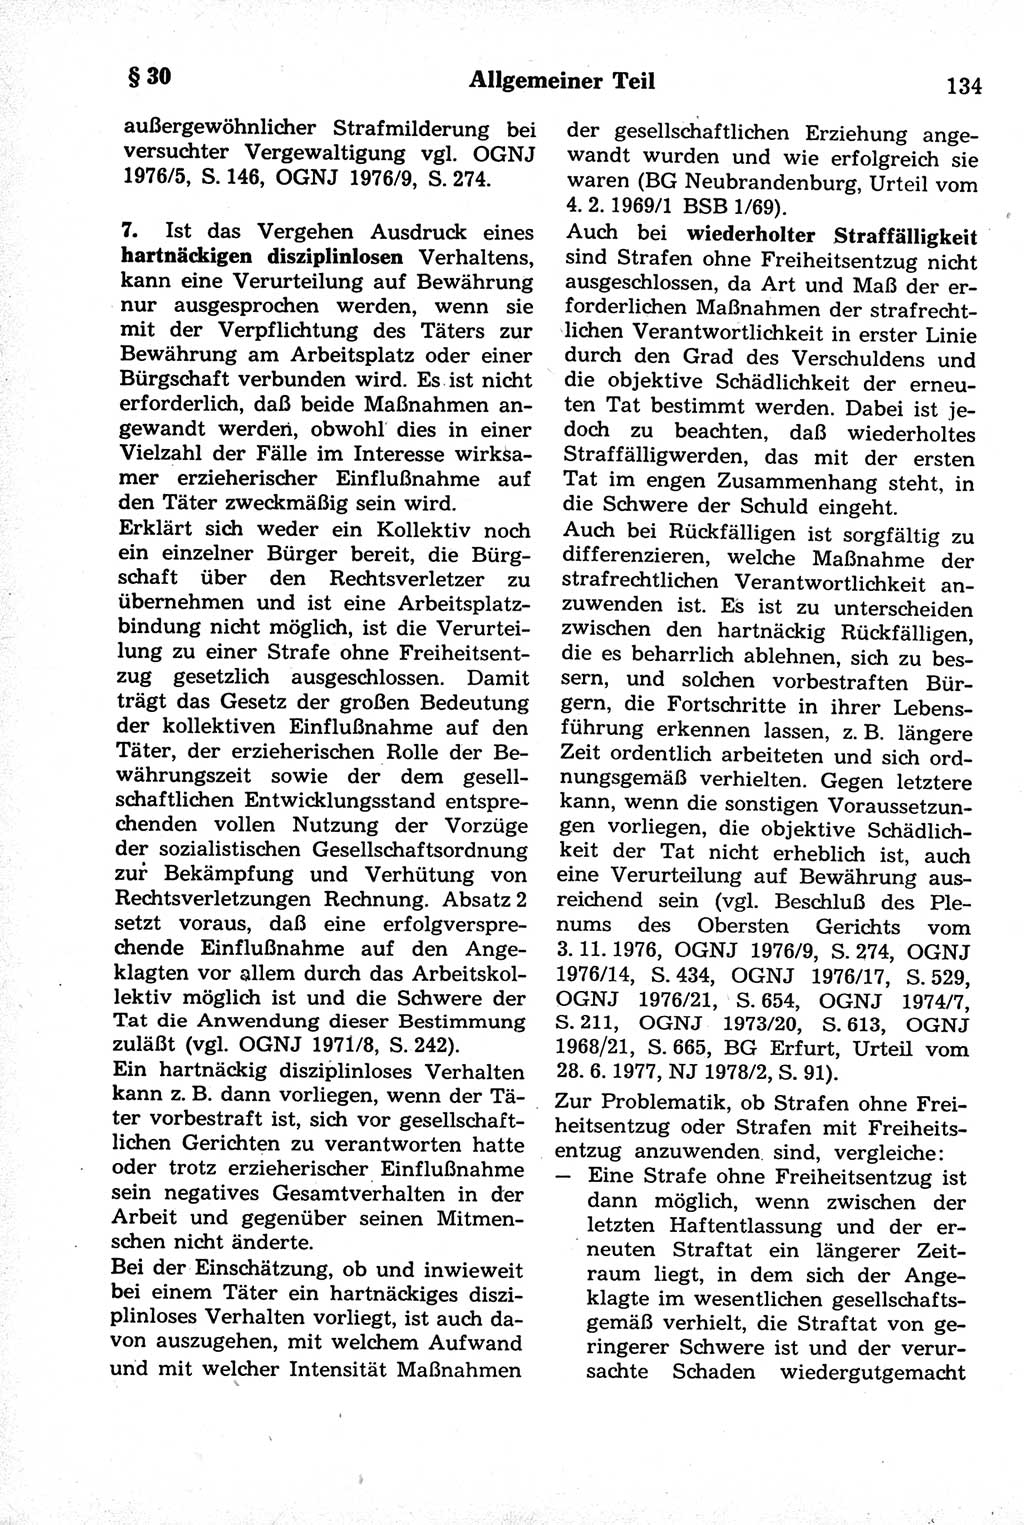 Strafrecht der Deutschen Demokratischen Republik (DDR), Kommentar zum Strafgesetzbuch (StGB) 1981, Seite 134 (Strafr. DDR Komm. StGB 1981, S. 134)